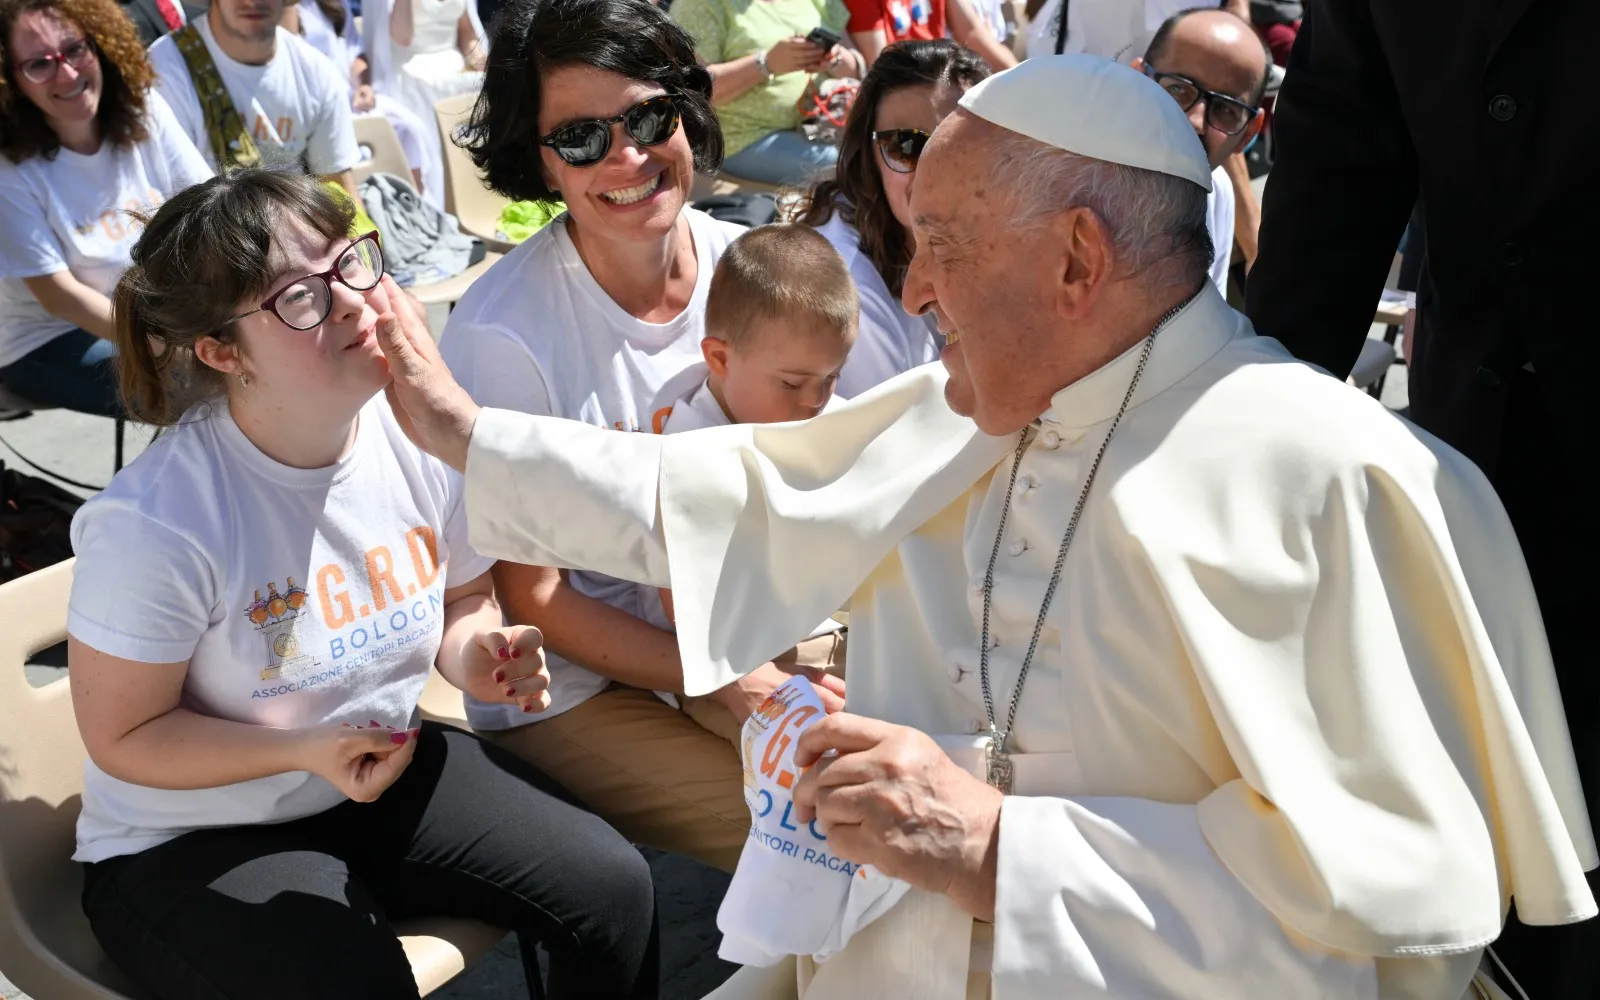 Imagen referencial del Papa Francisco y una joven durante la Audiencia General?w=200&h=150